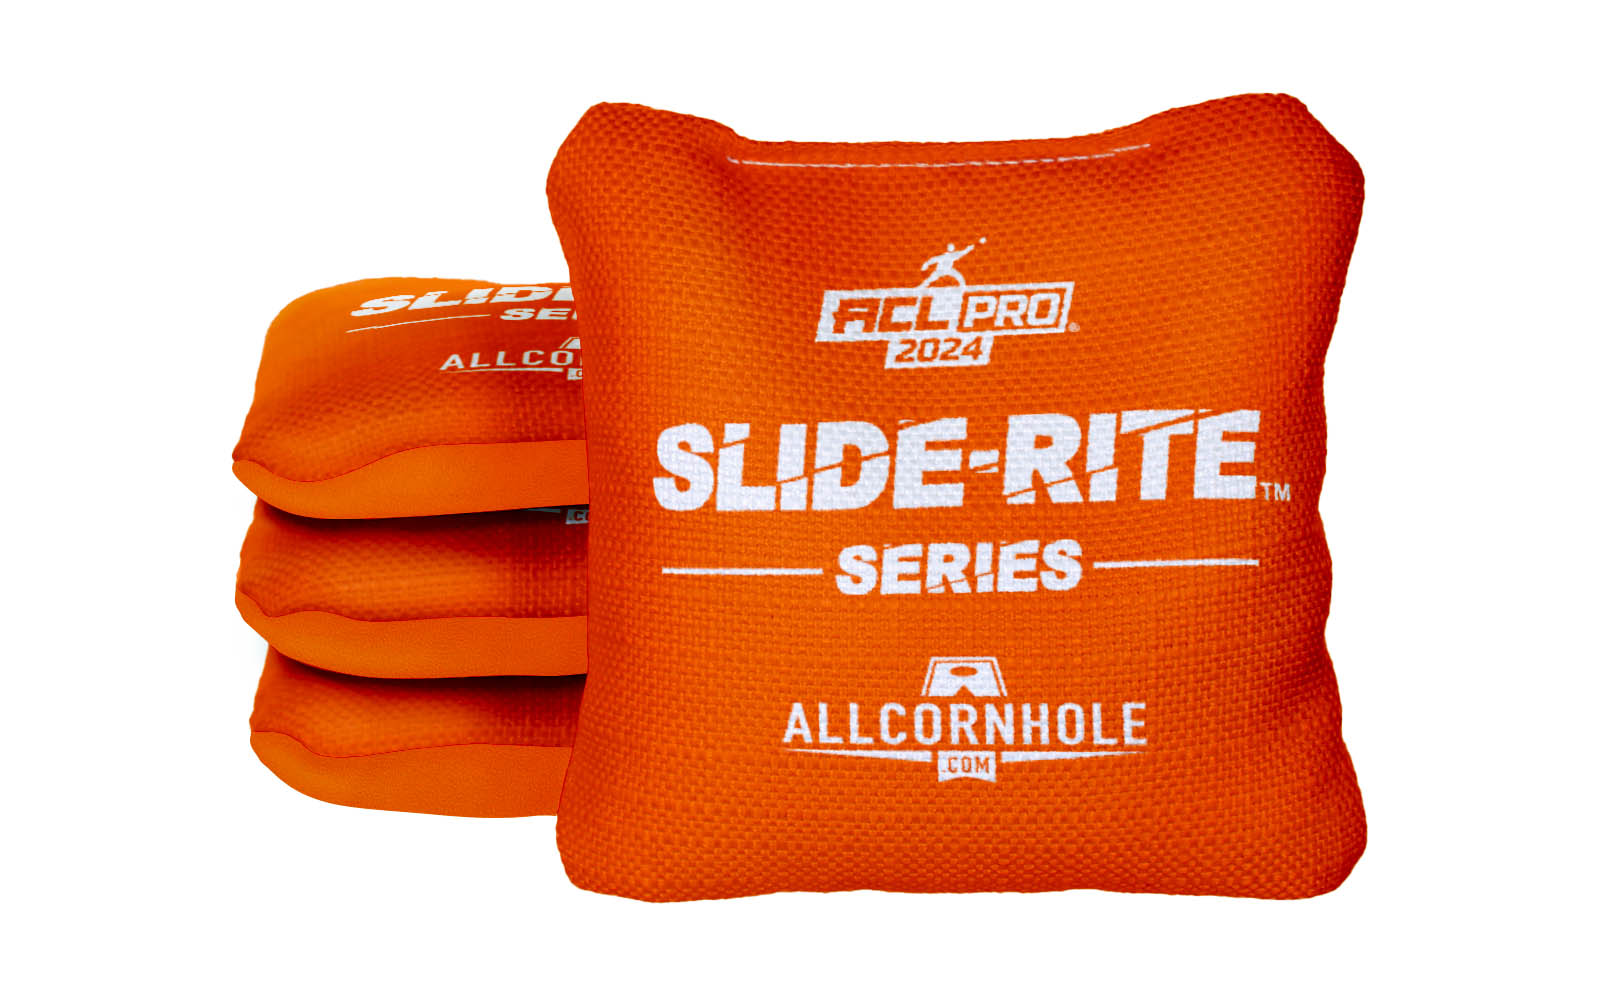 Officially Licensed Collegiate Cornhole Bags - Slide Rite - Set of 4 - Clemson University